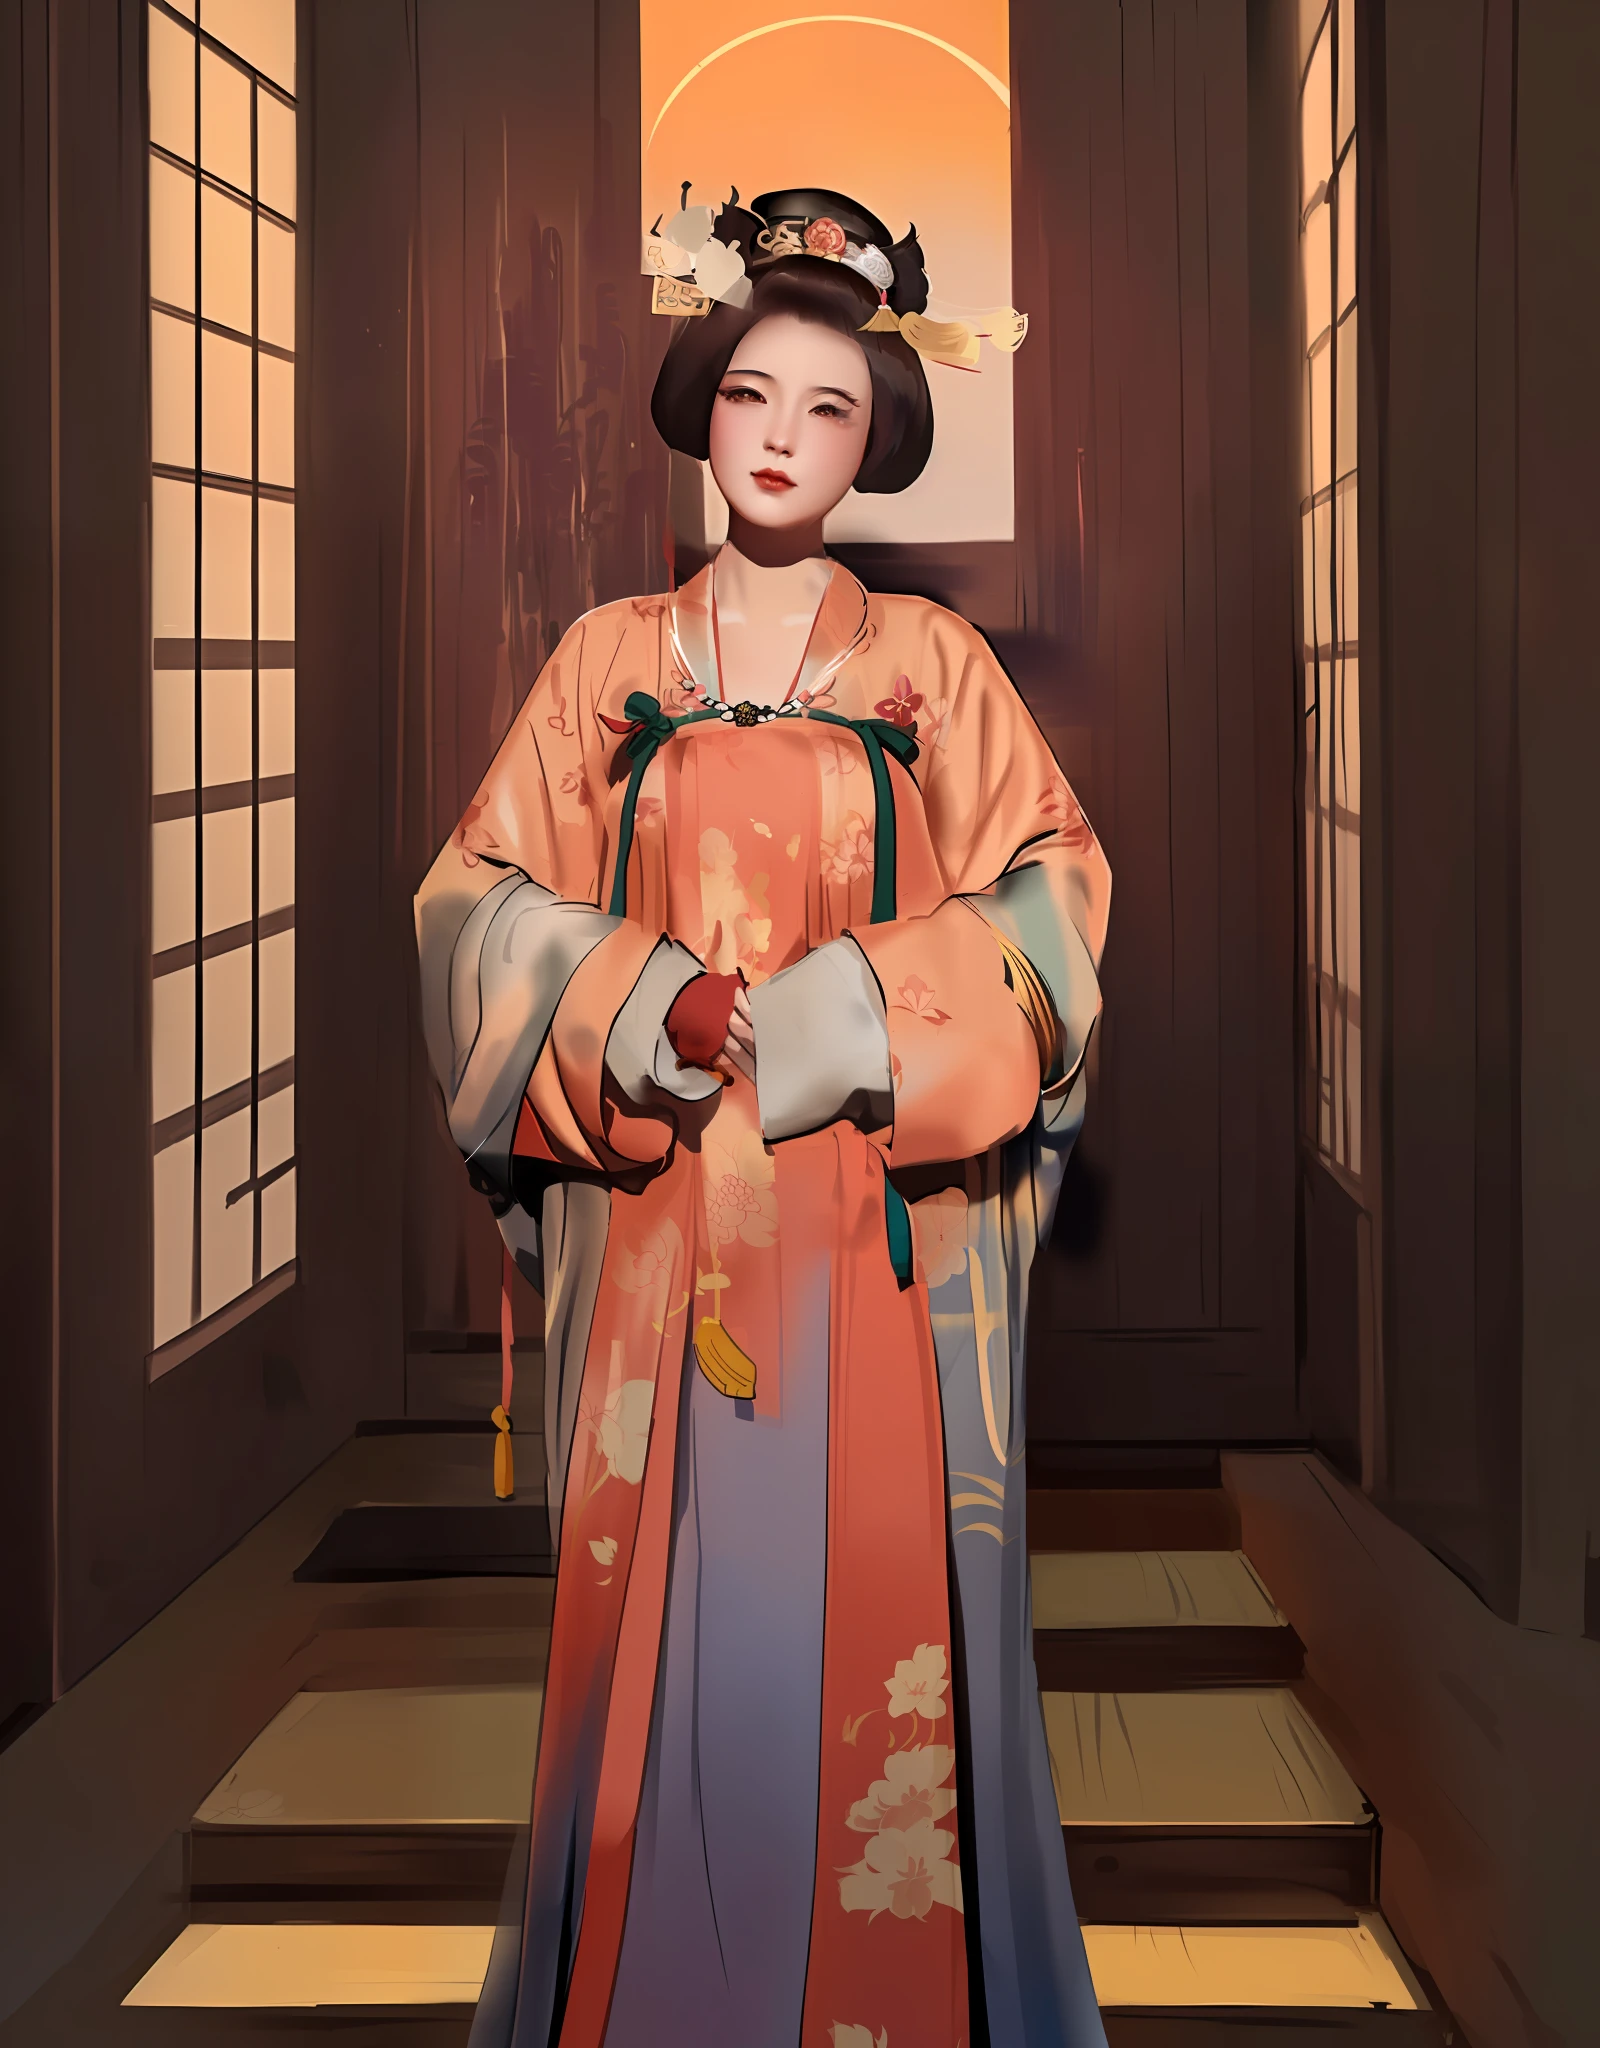 mulher arafa com vestido quimono e chapéu posando para uma foto, inspired by Uemura Shōen, Palácio ， uma garota em hanfu, obras de arte no estilo de guweiz, chinese empress, inspirado em Wang Meng, inspirado em Min Zhen, inspirado em Yun Du-seo, inspirado em Yun Shouping, inspirado em Lan Ying